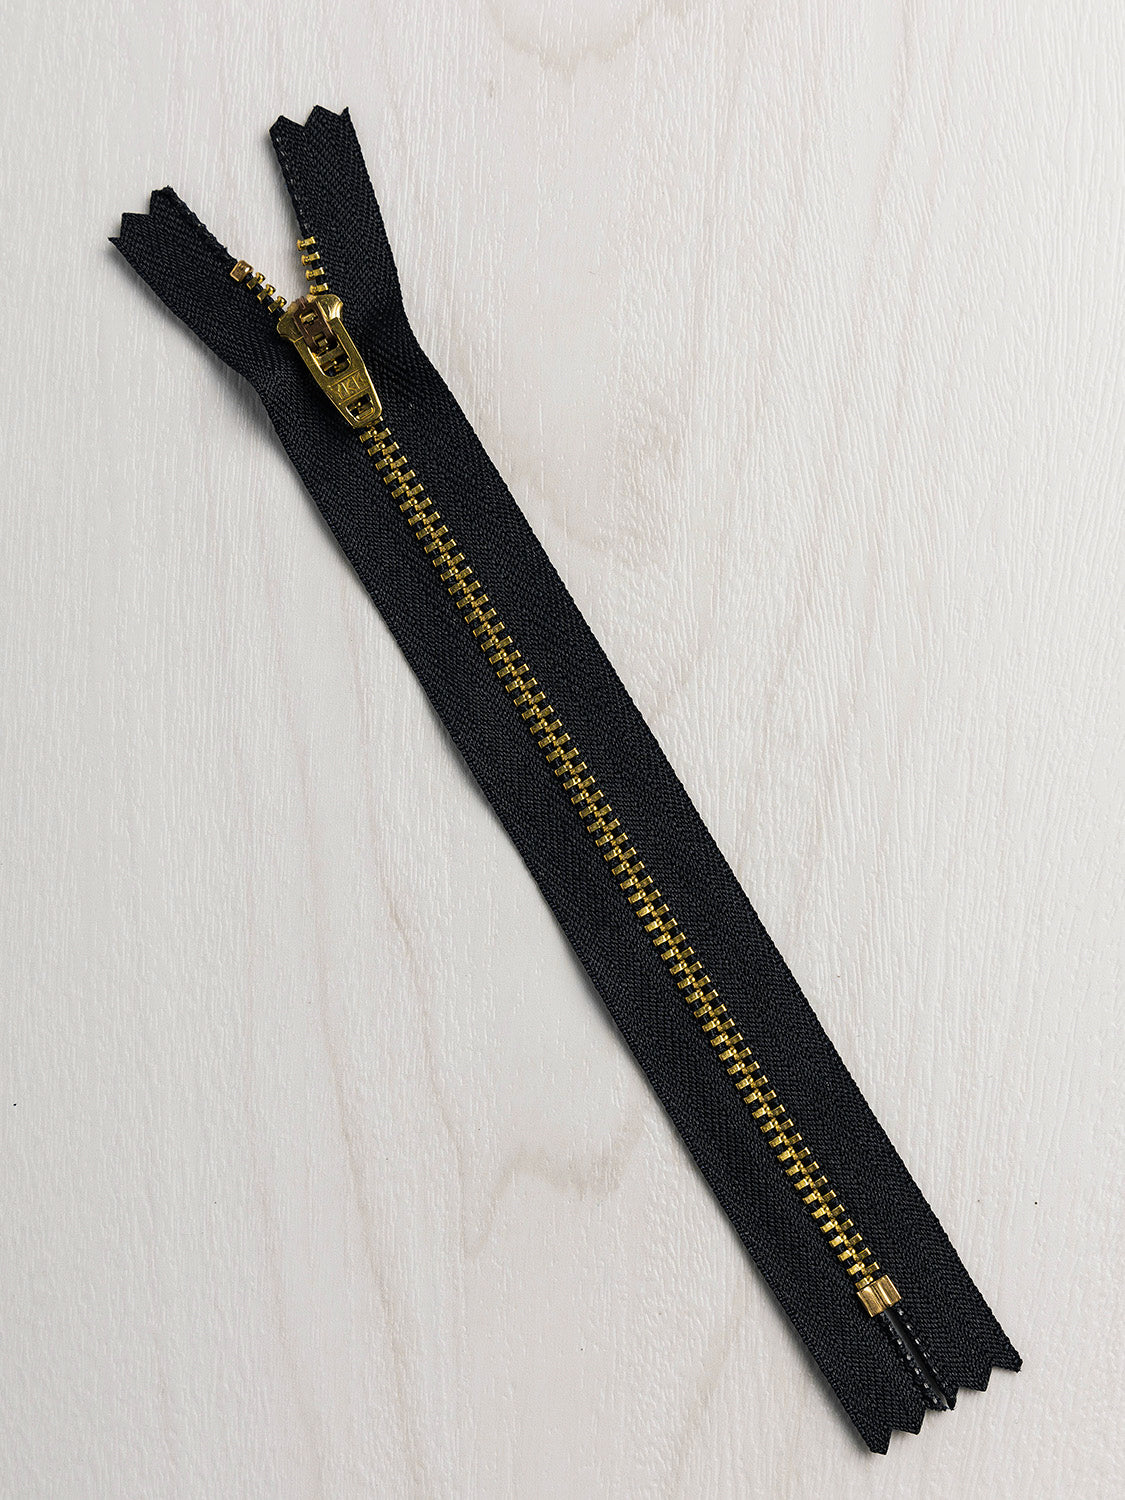 YKK Metal Jacket Zipper - Rust & Antique Gold – Maker's Fabric